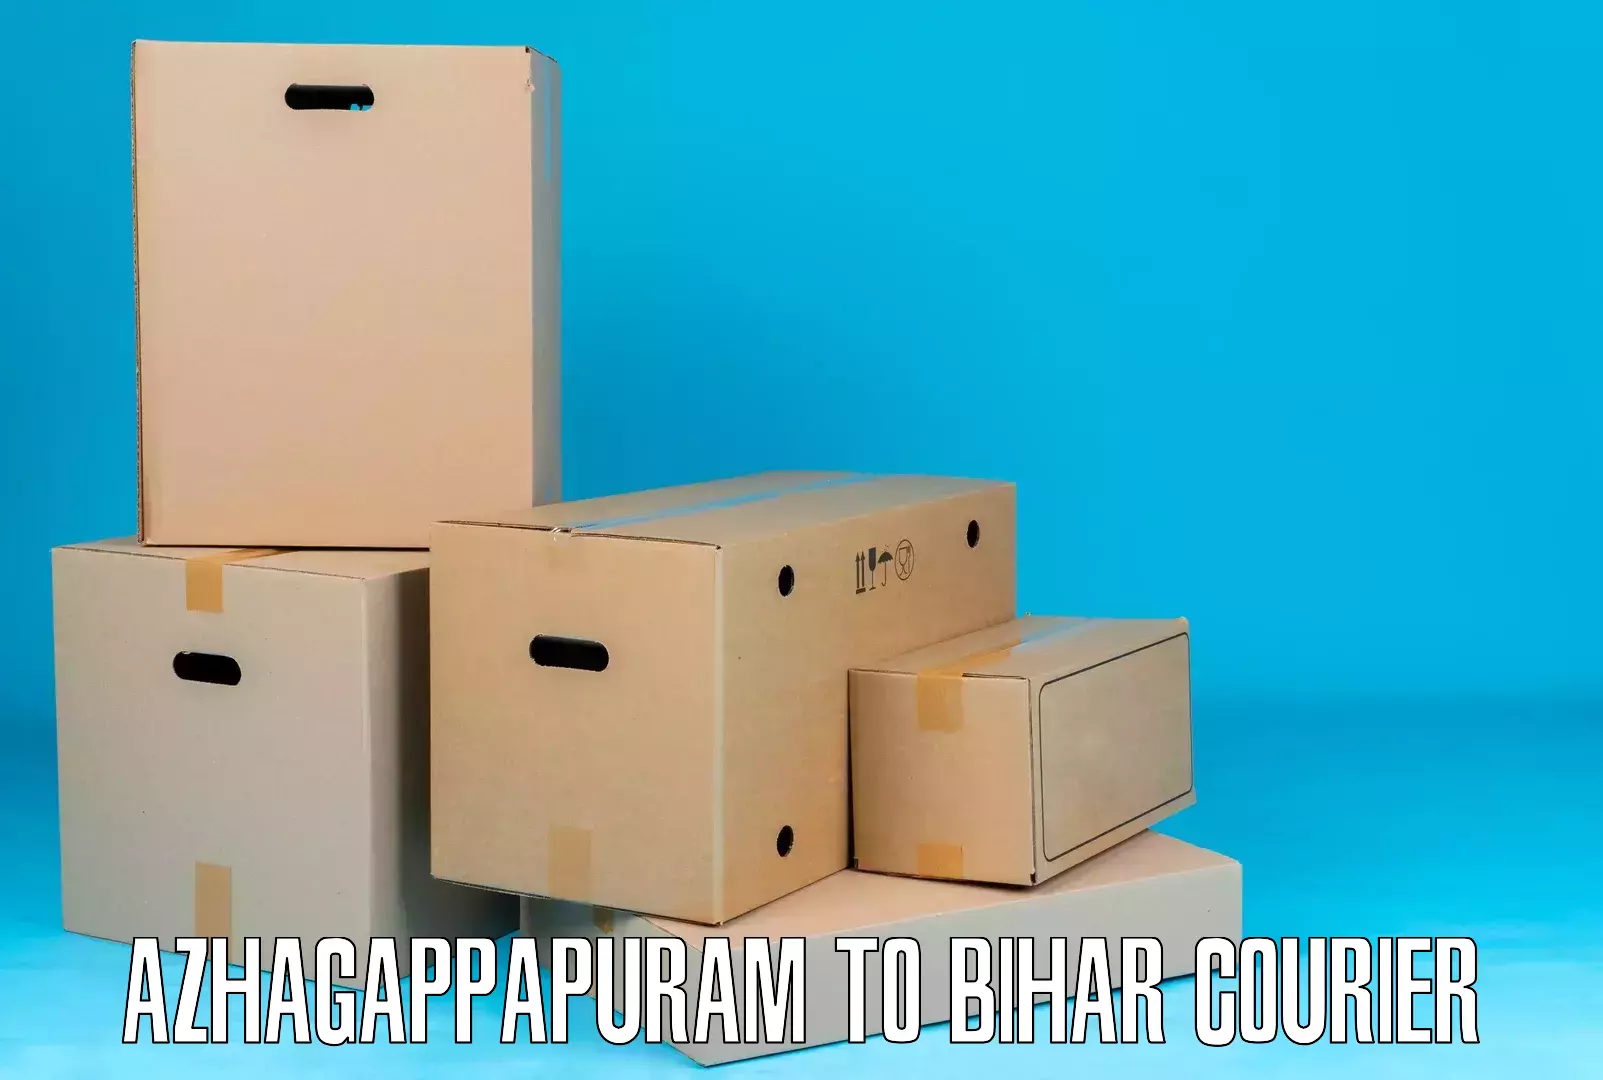 High-capacity shipping options Azhagappapuram to Bharwara